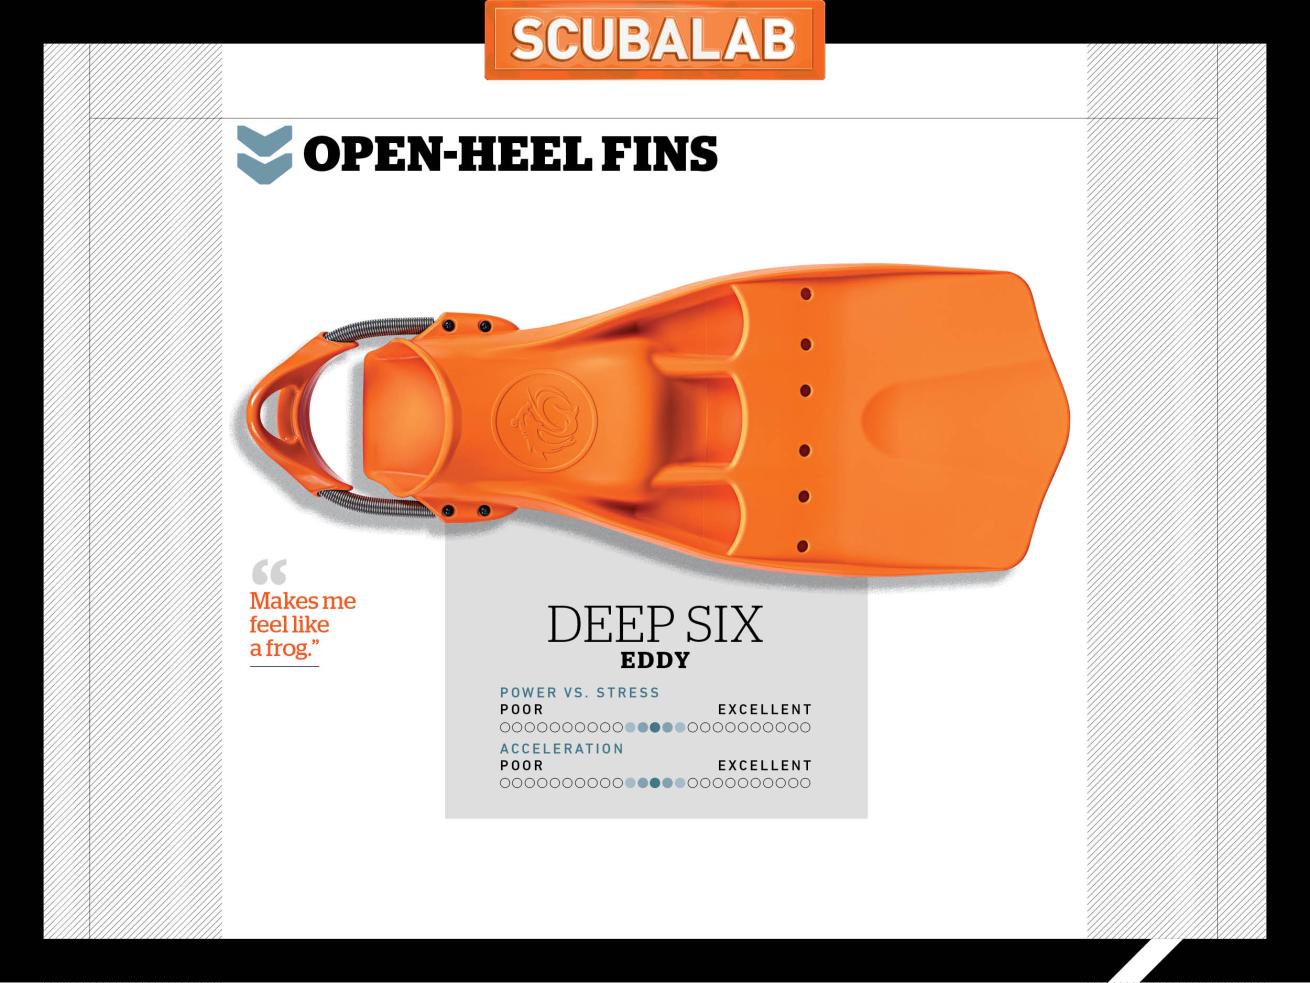 Deep Six Eddy Scuba Diving Fin ScubaLab Test Review